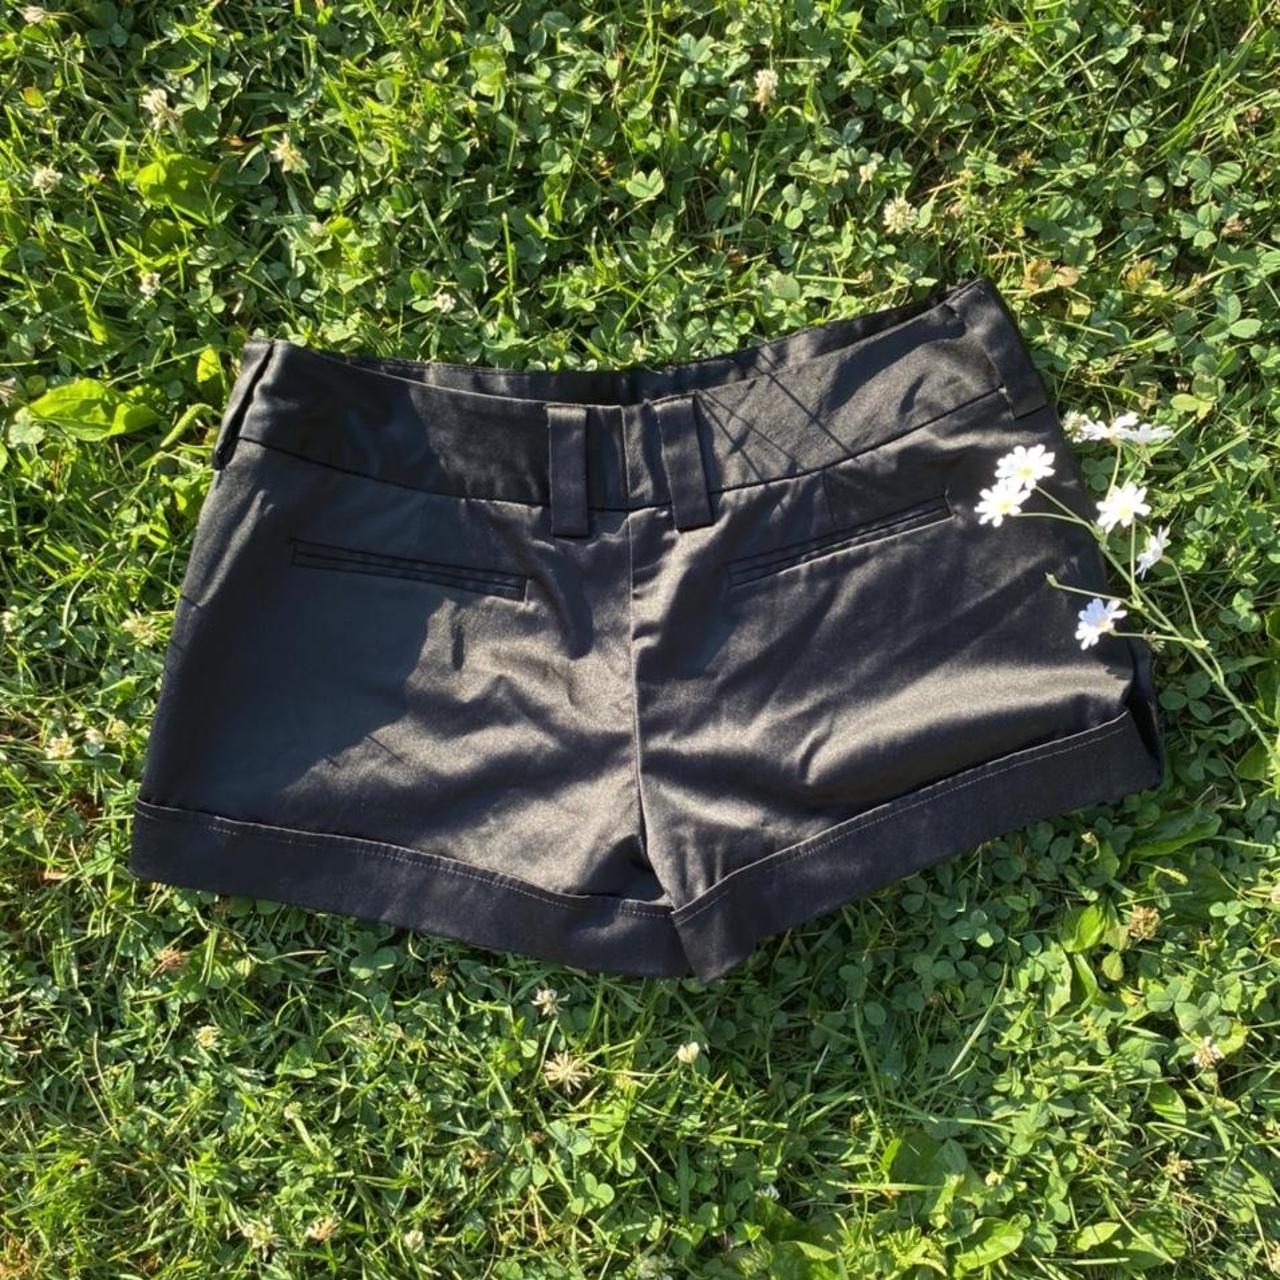 Product Image 2 - Vintage black satin shorts

Brand: IZ